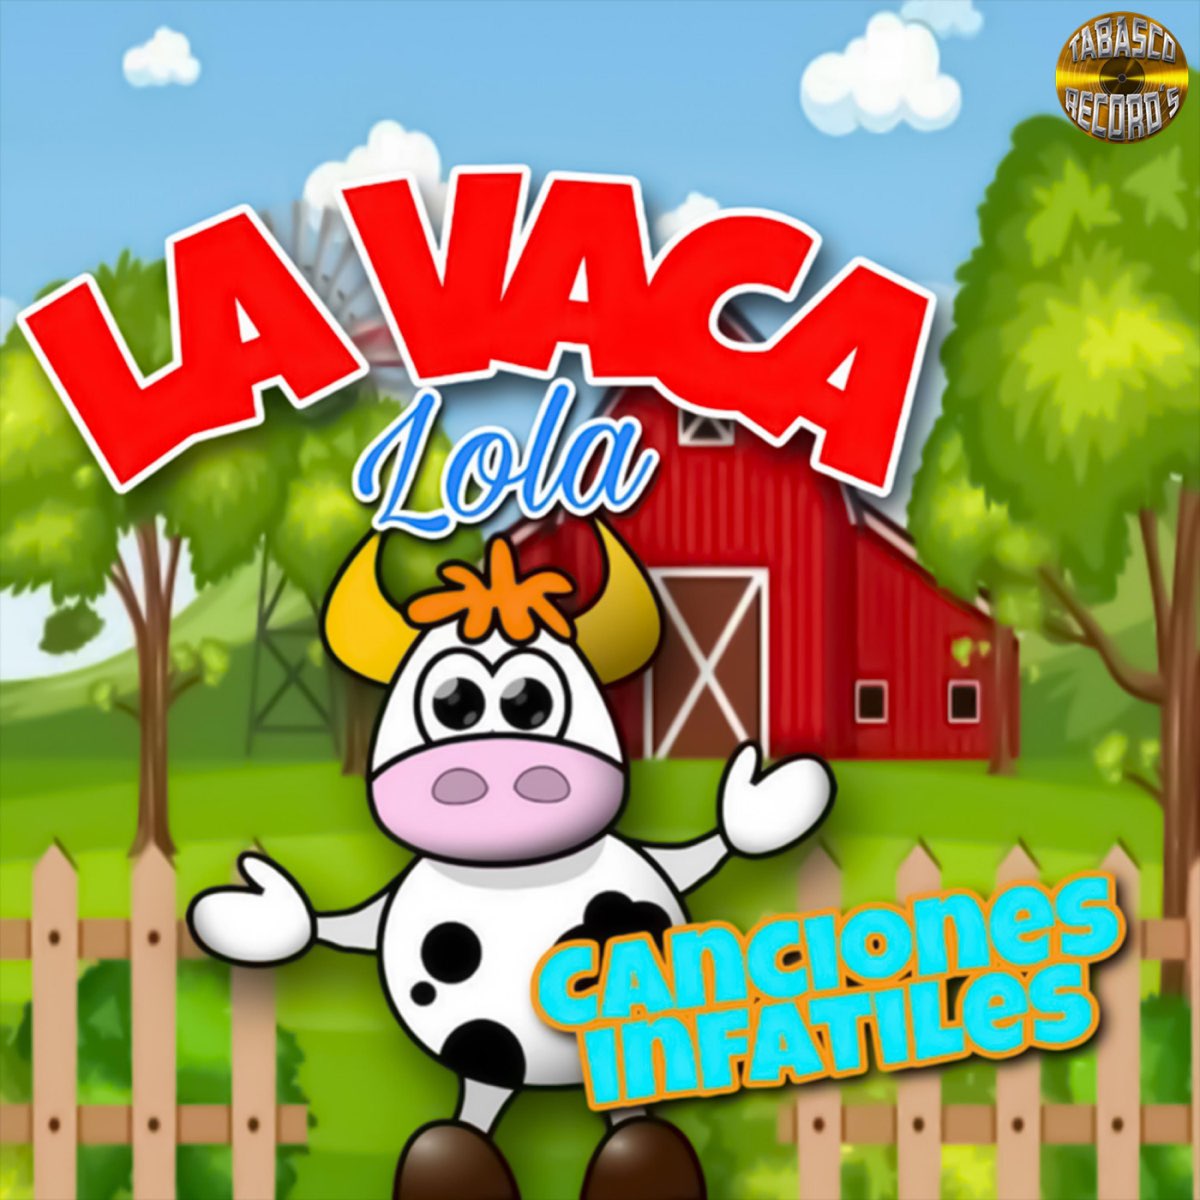 La Vaca Lola by Canciones Infantiles on Apple Music